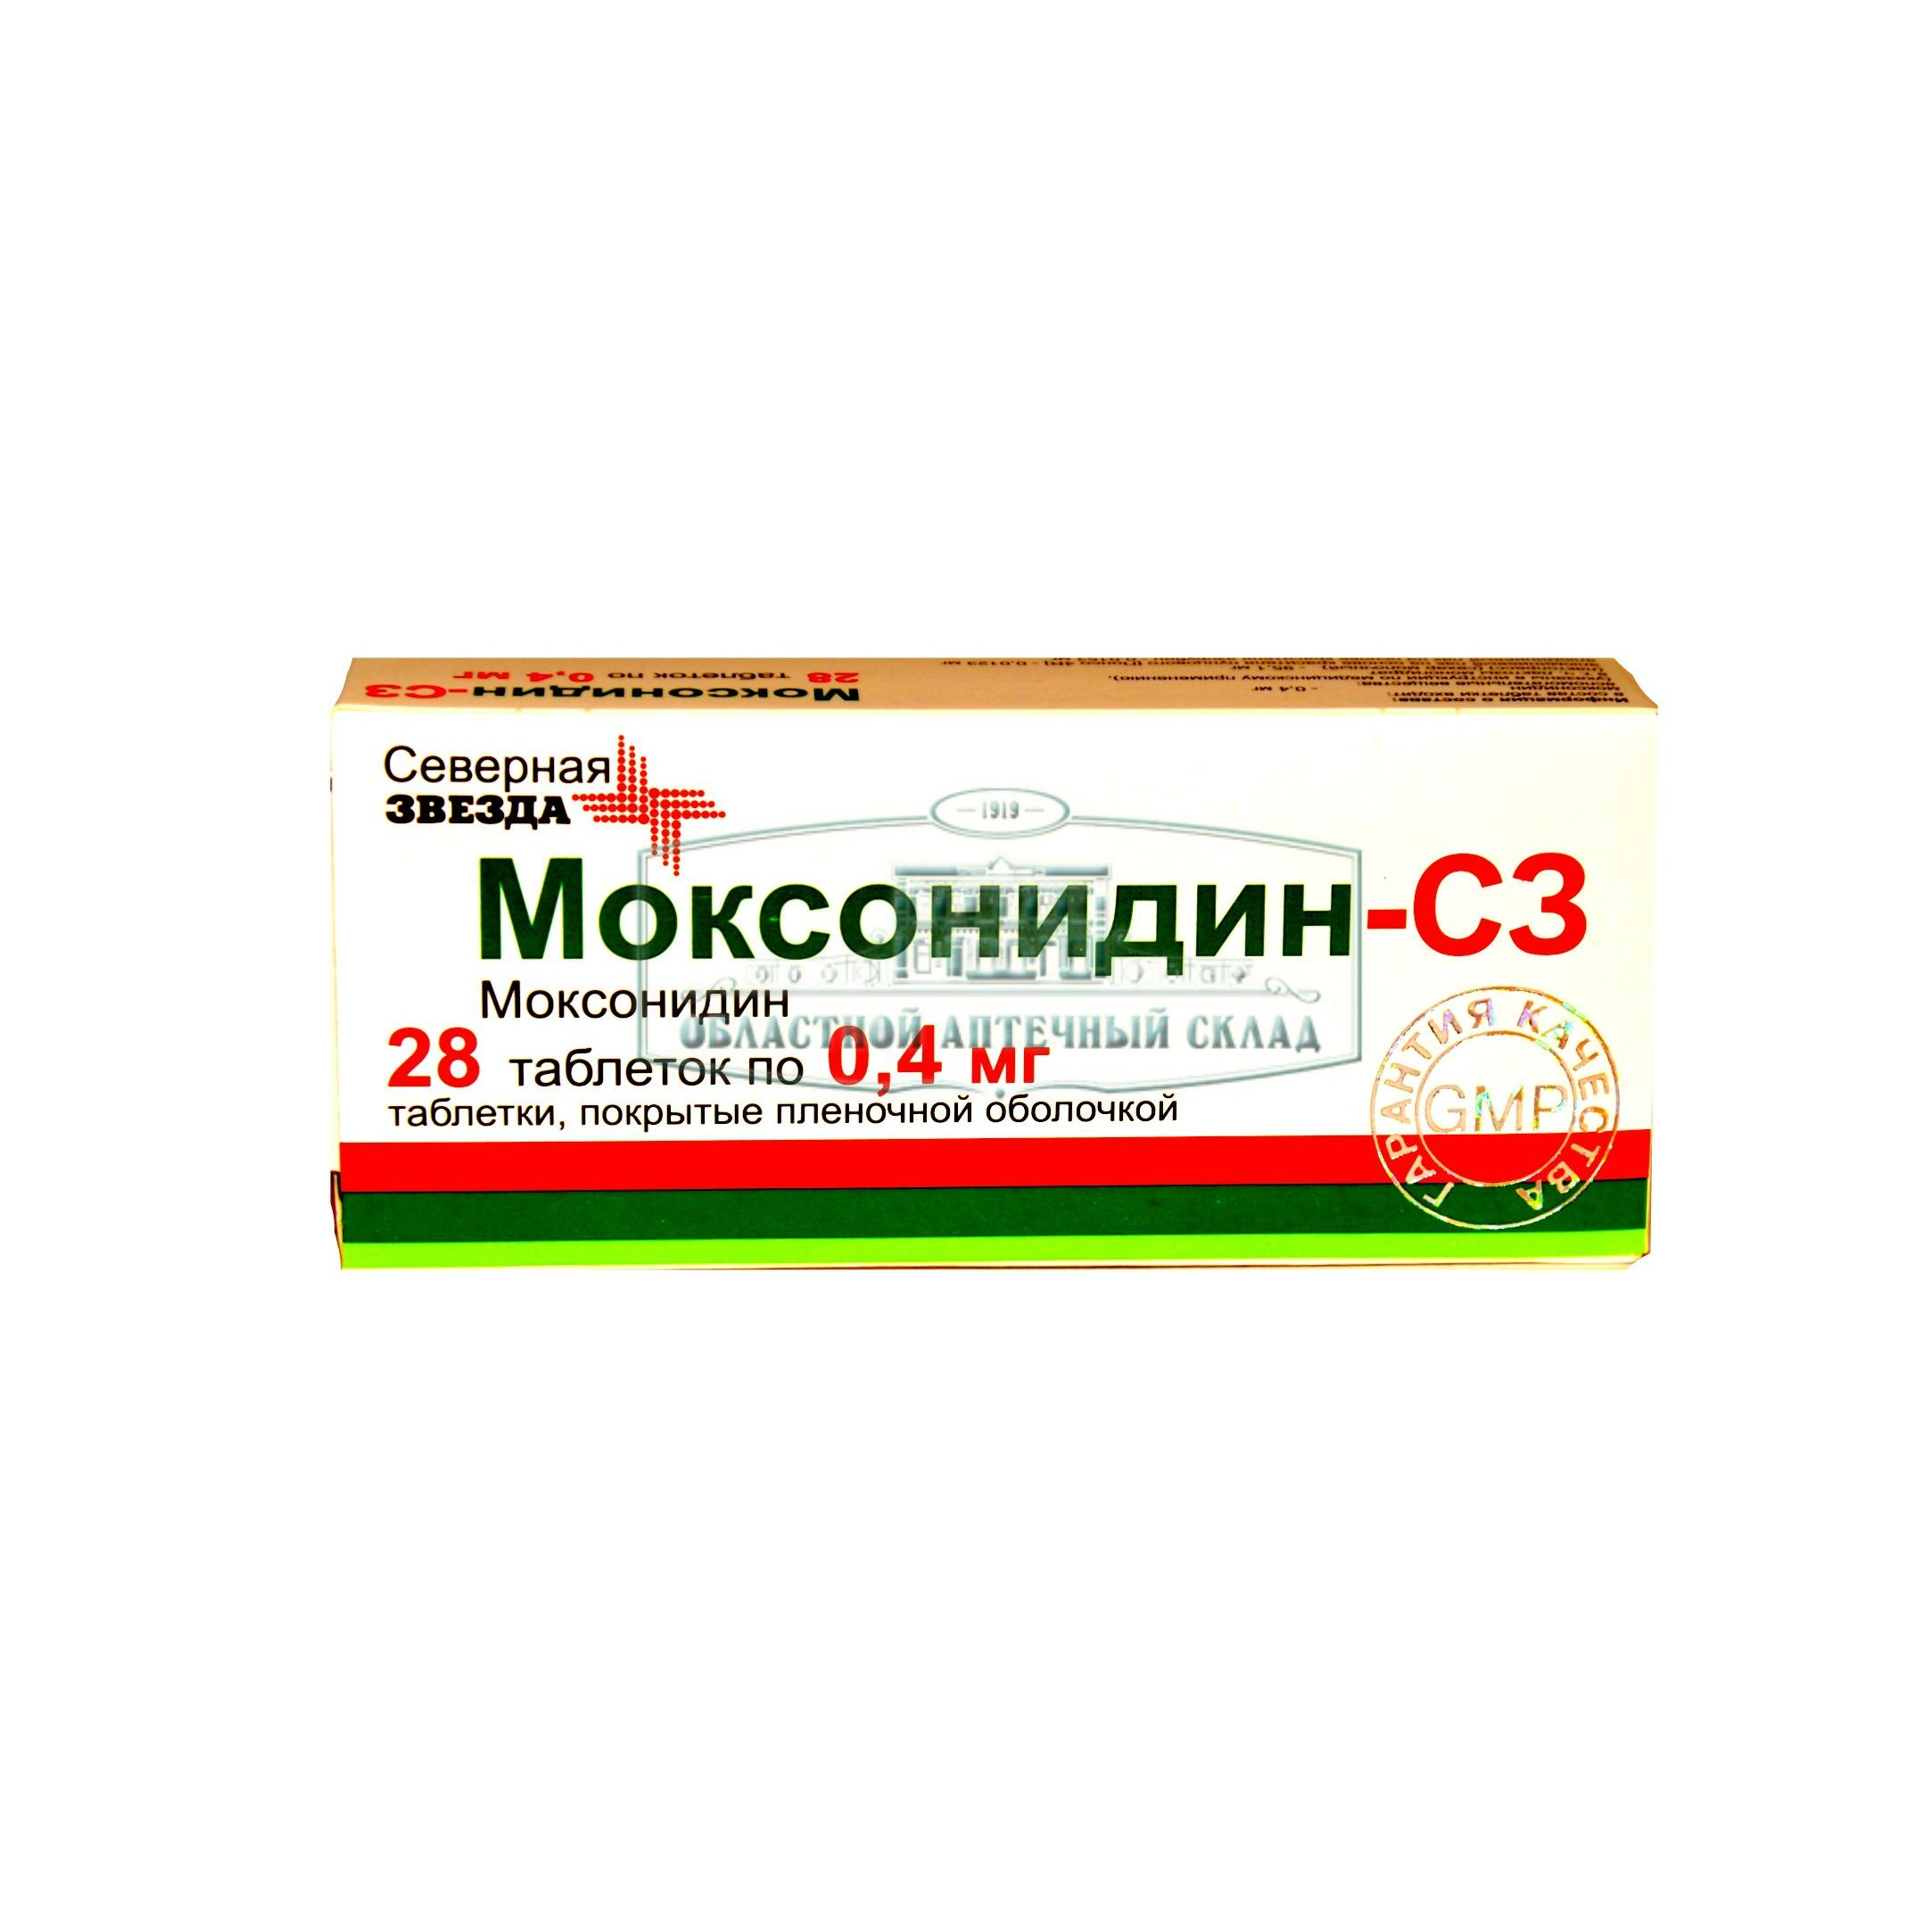 Моксонидин-СЗ тб 0.4мг N28  в Челябинске по доступным ценам